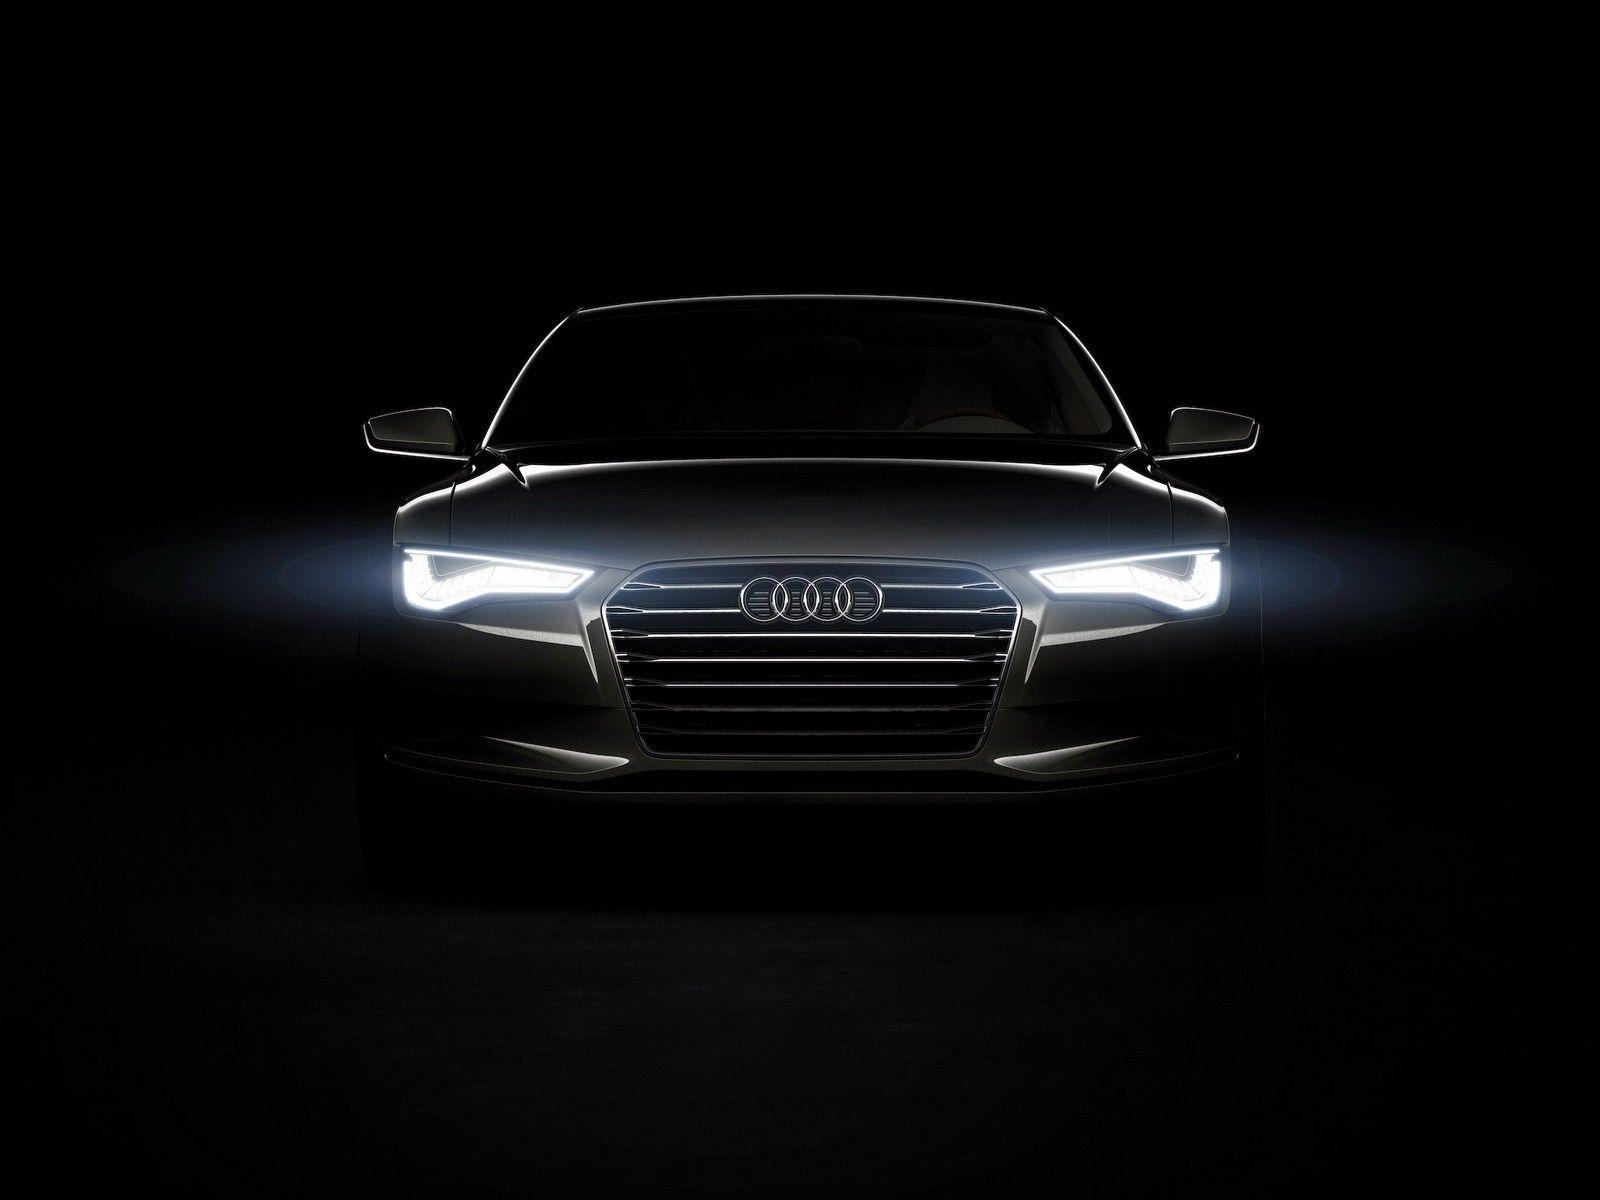 Audi HD Wallpaper. Audi Car Image Free Download